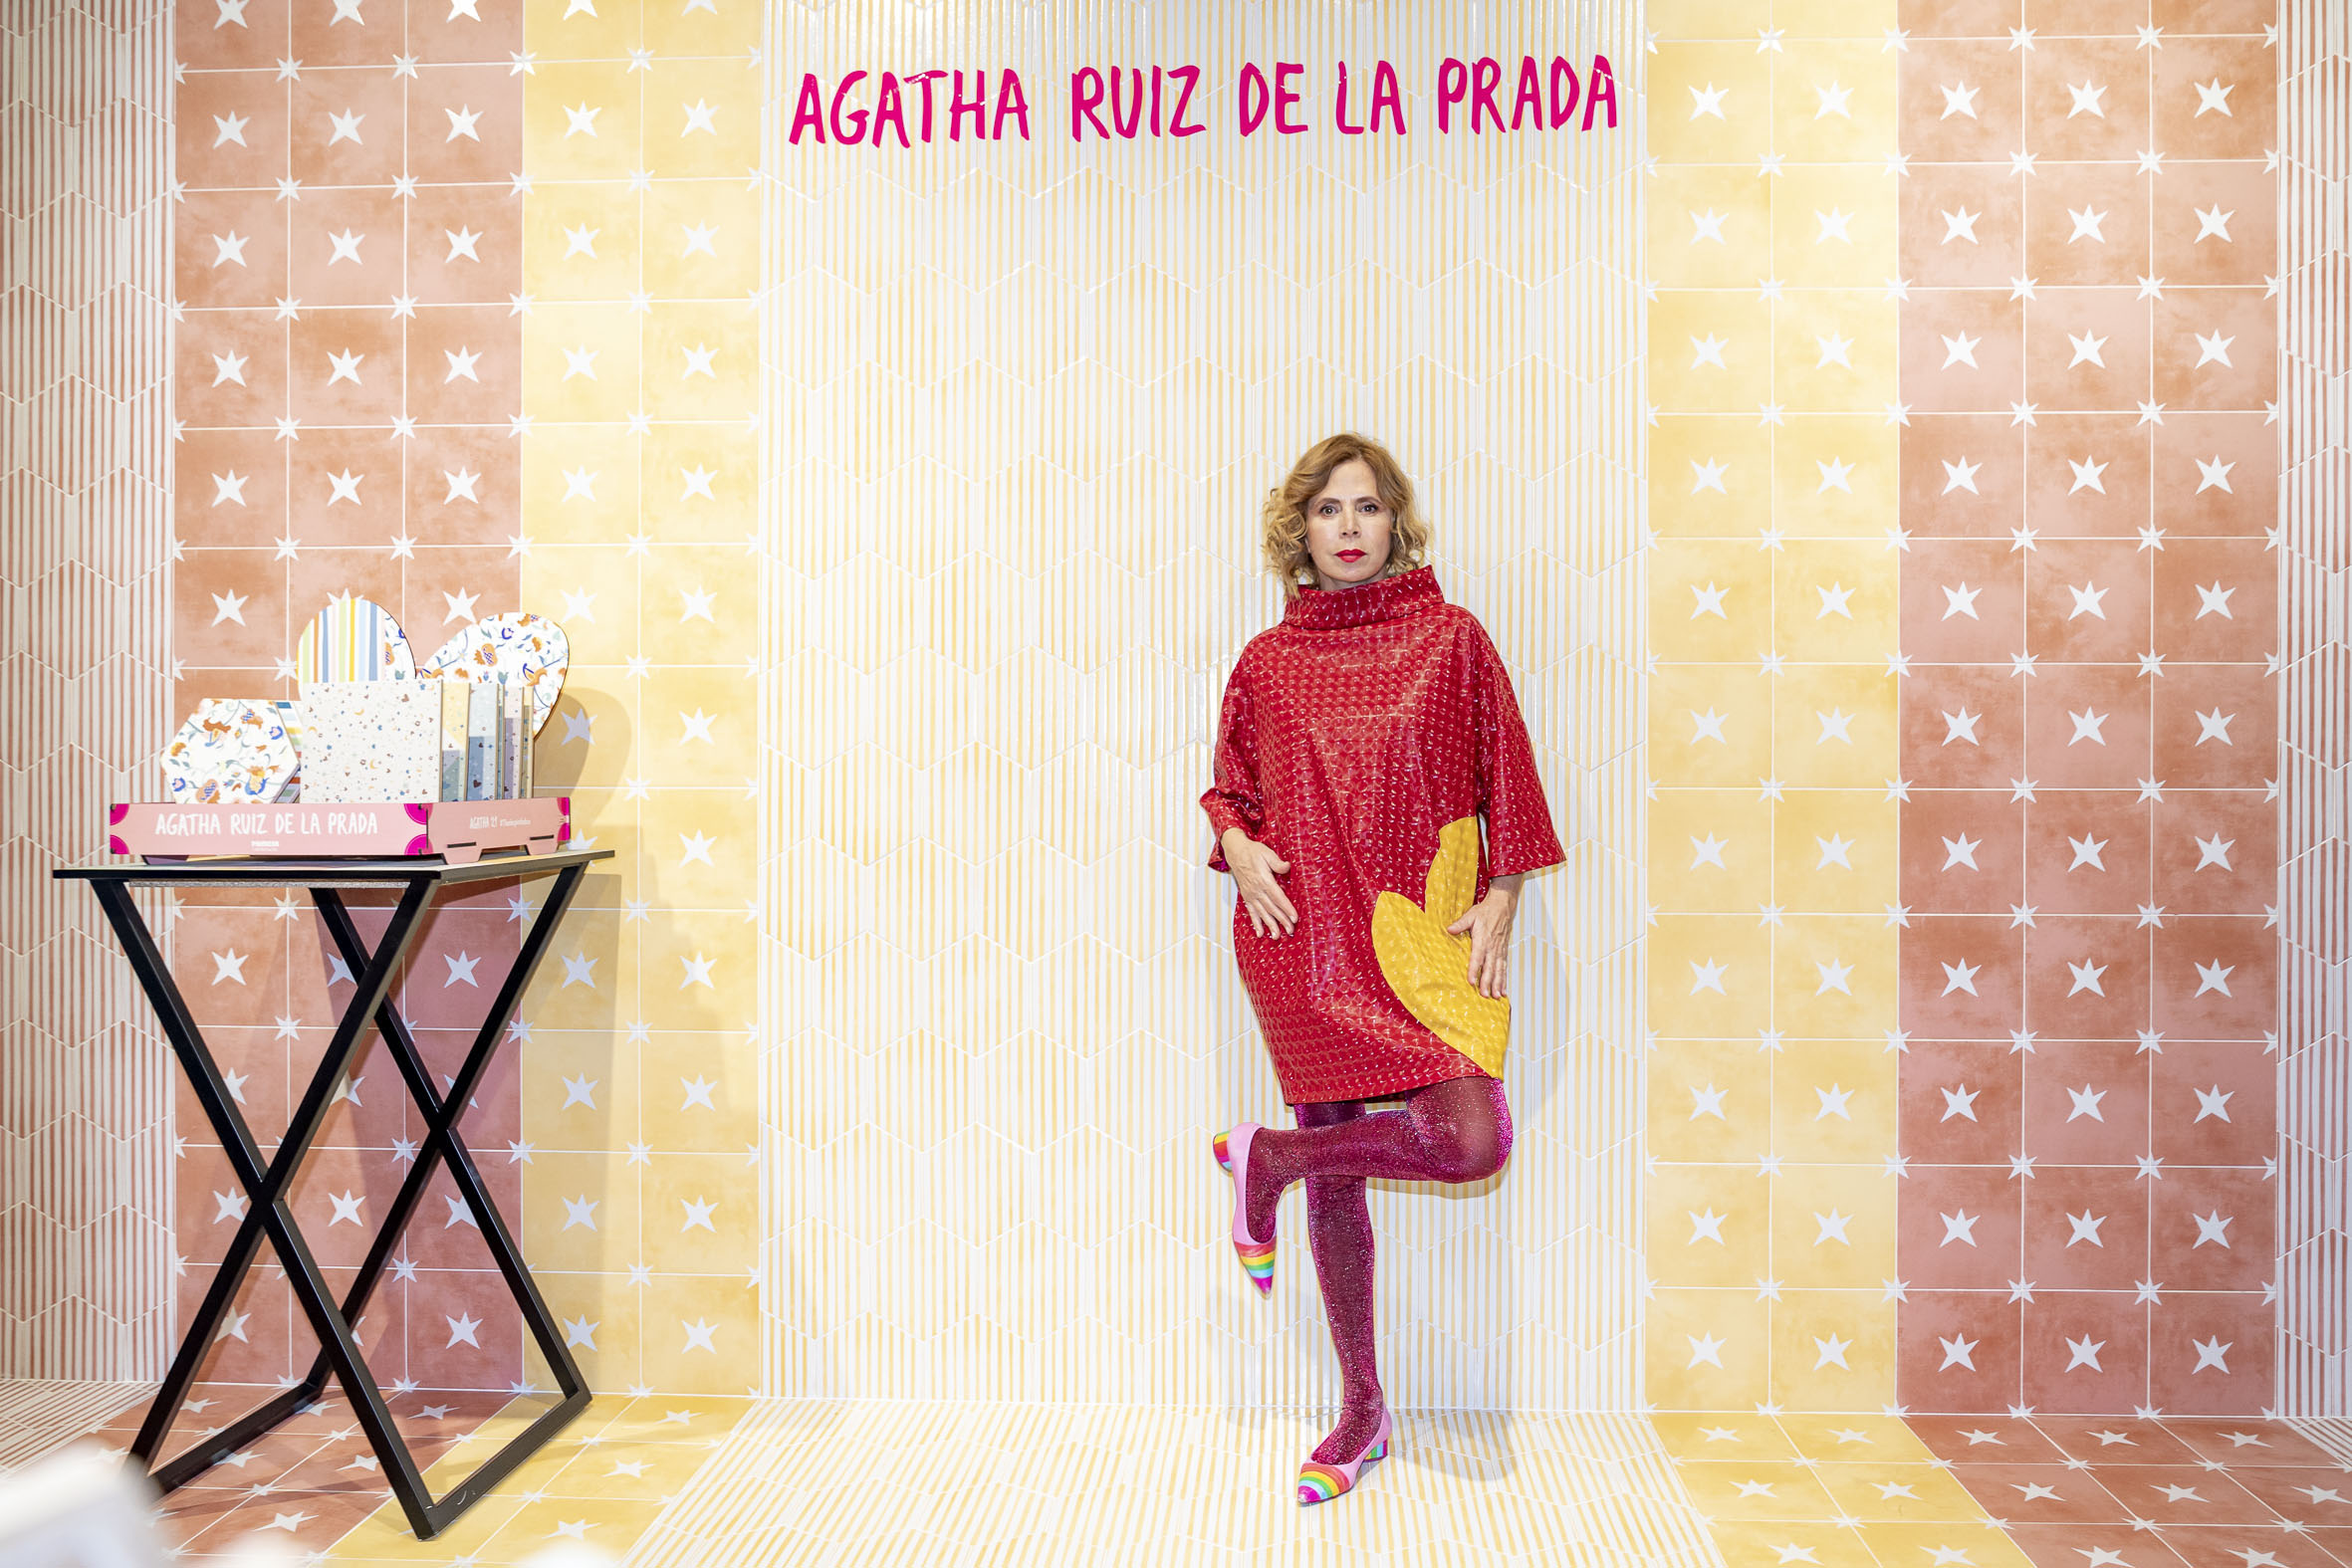 Agatha Ruiz de la Prada: 